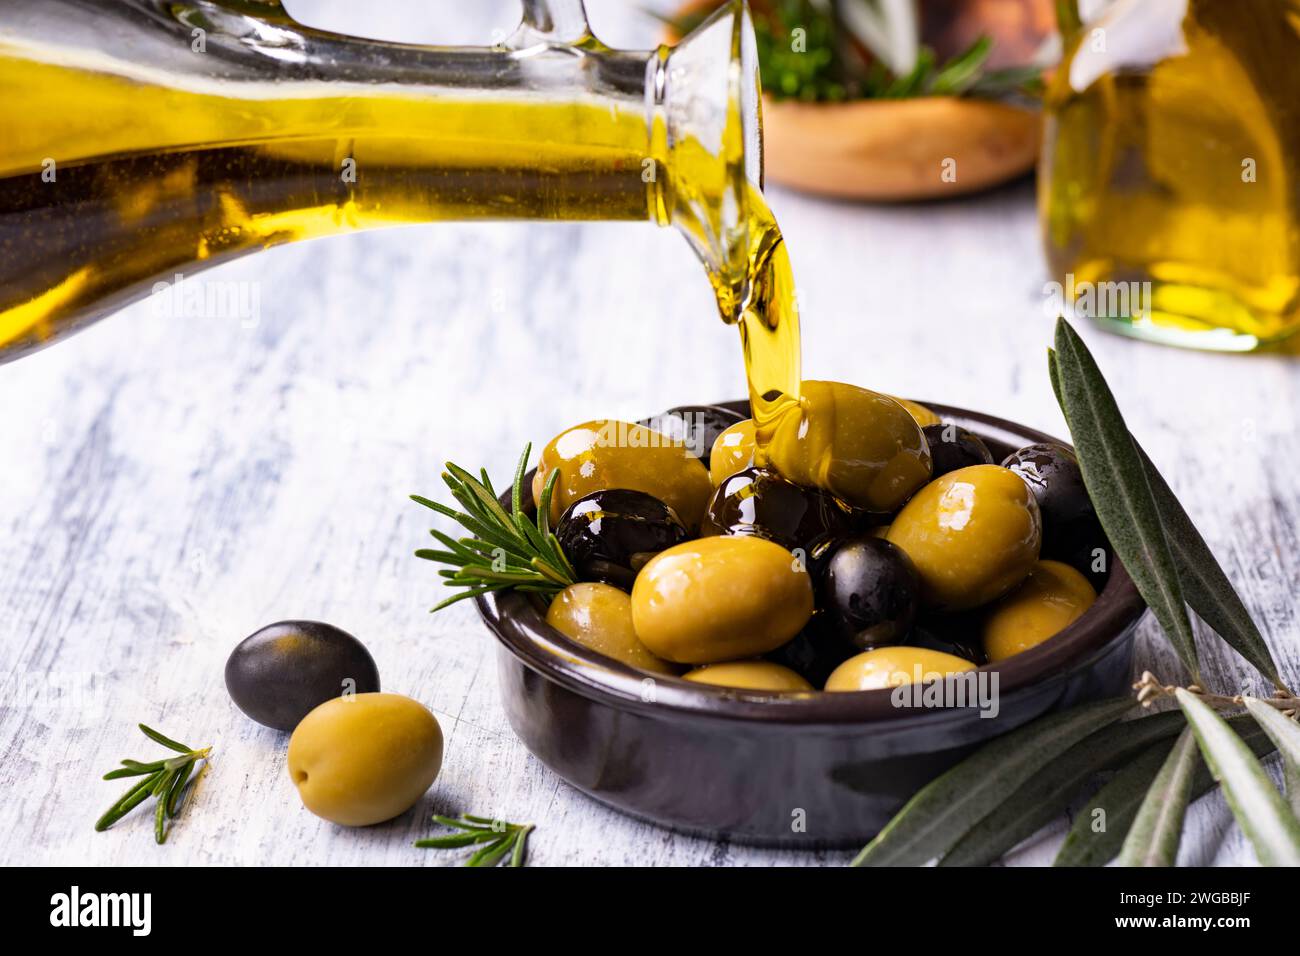 au premier plan, de l'huile d'olive extra vierge est versée dans un bol avec des olives aromatisées au romarin Banque D'Images